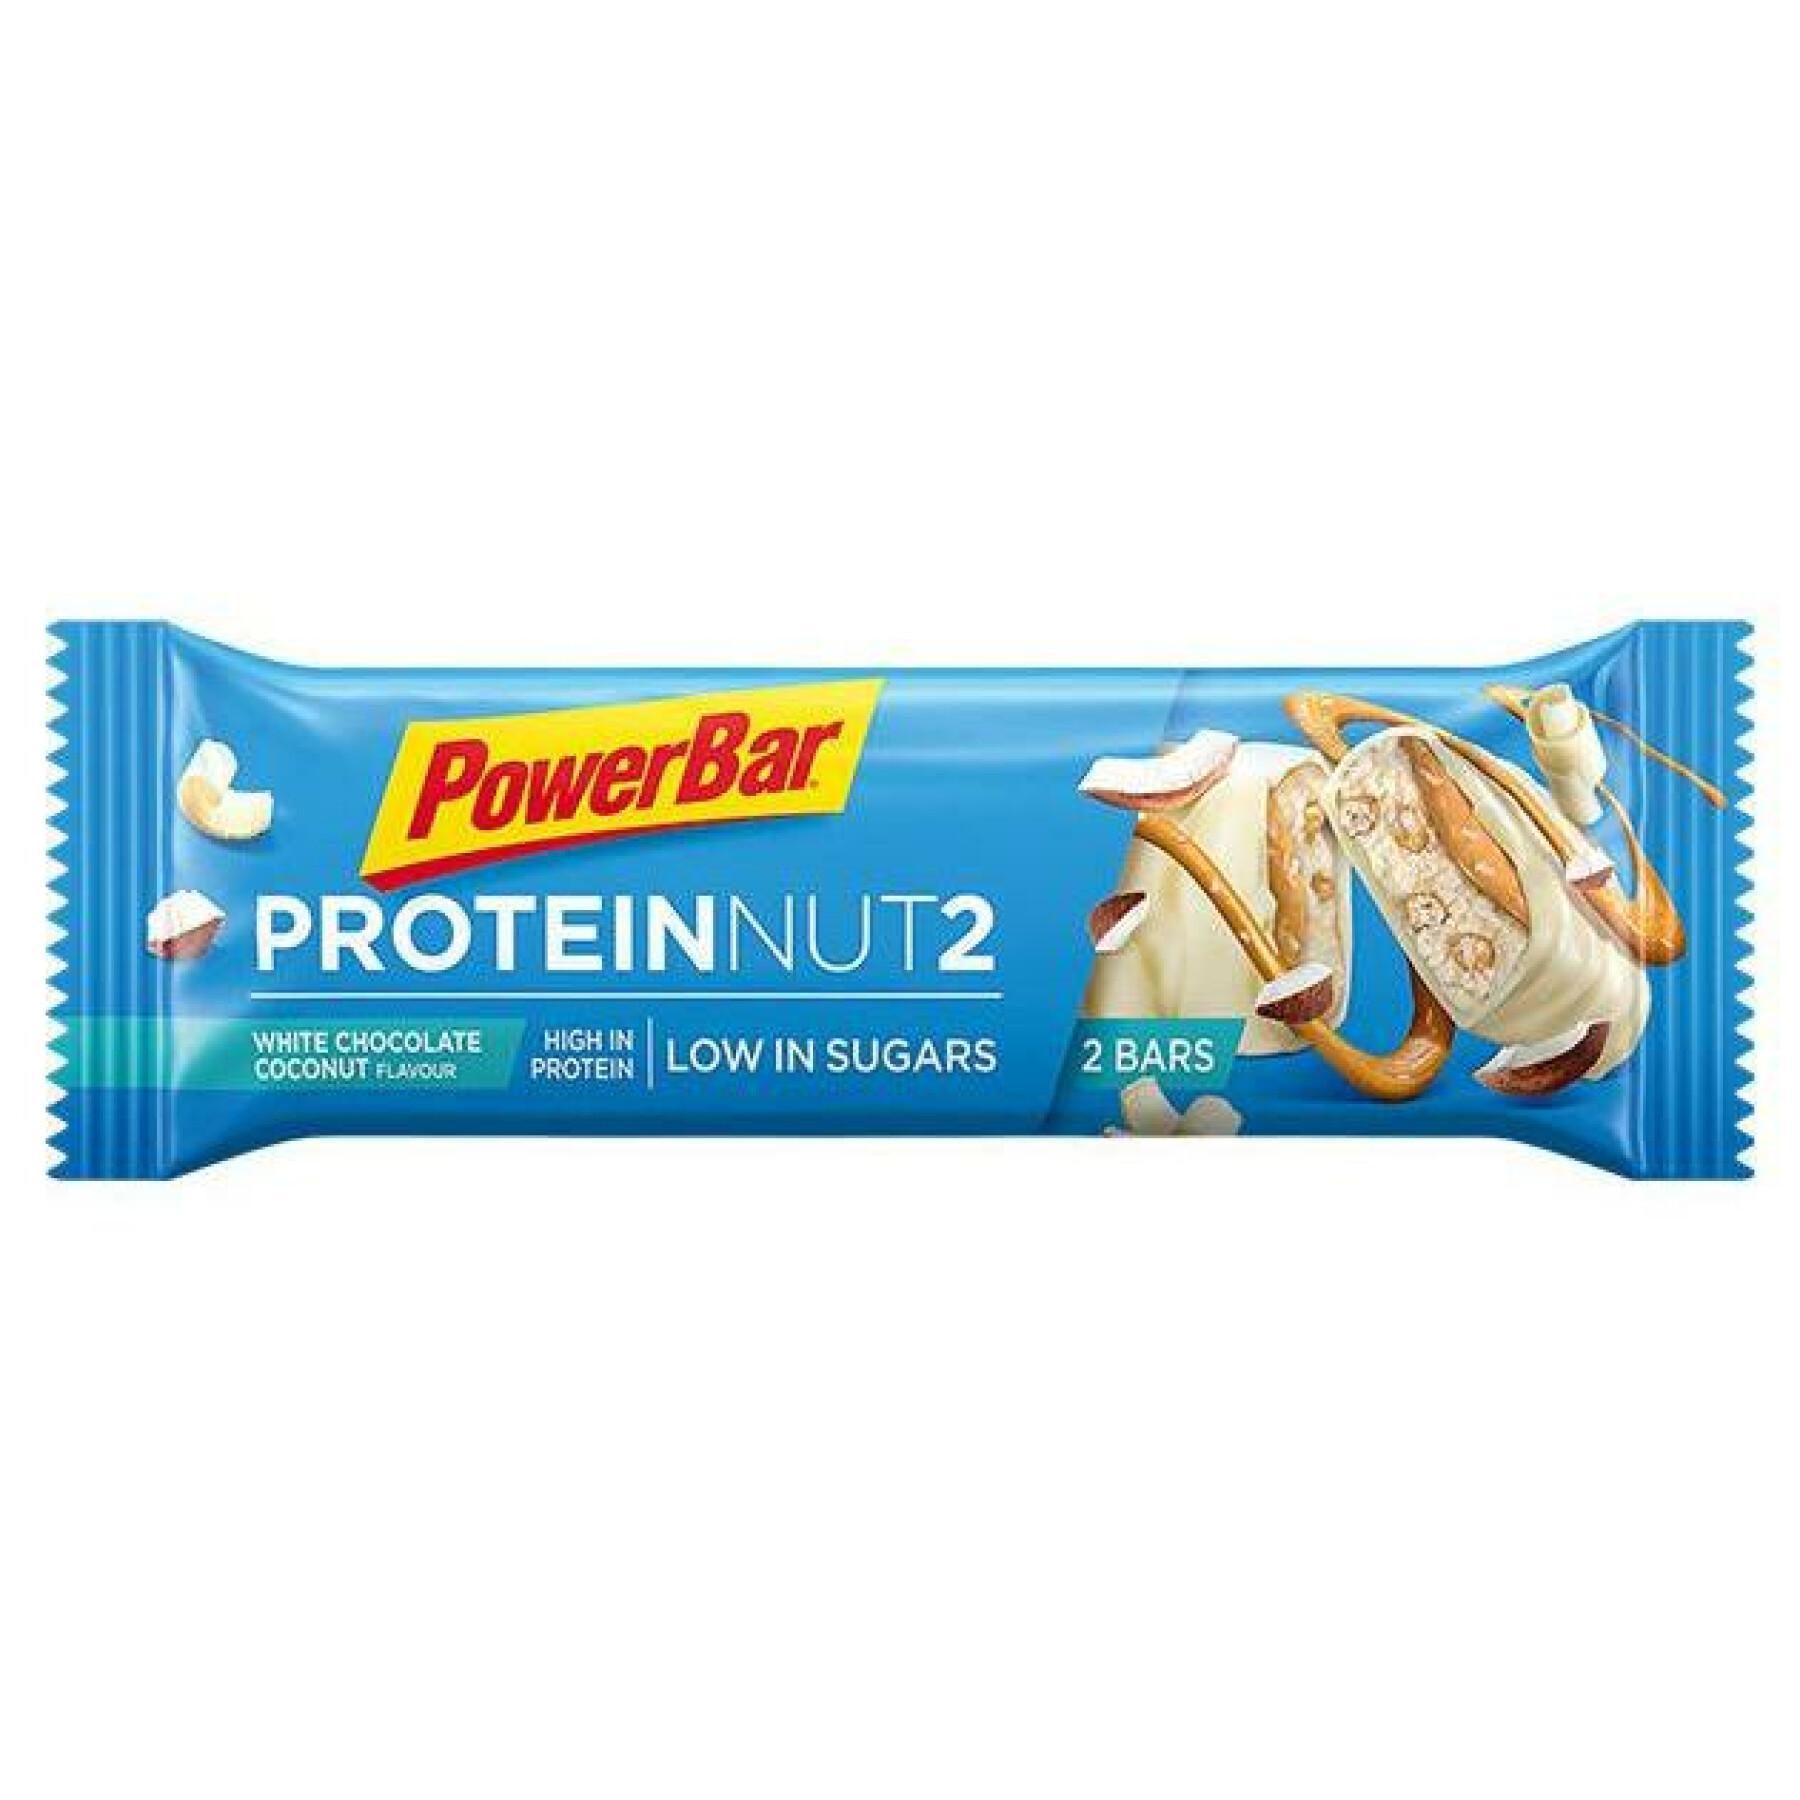 Confezione da 18 barrette PowerBar Protein Nut2 - White Chocolate coconut